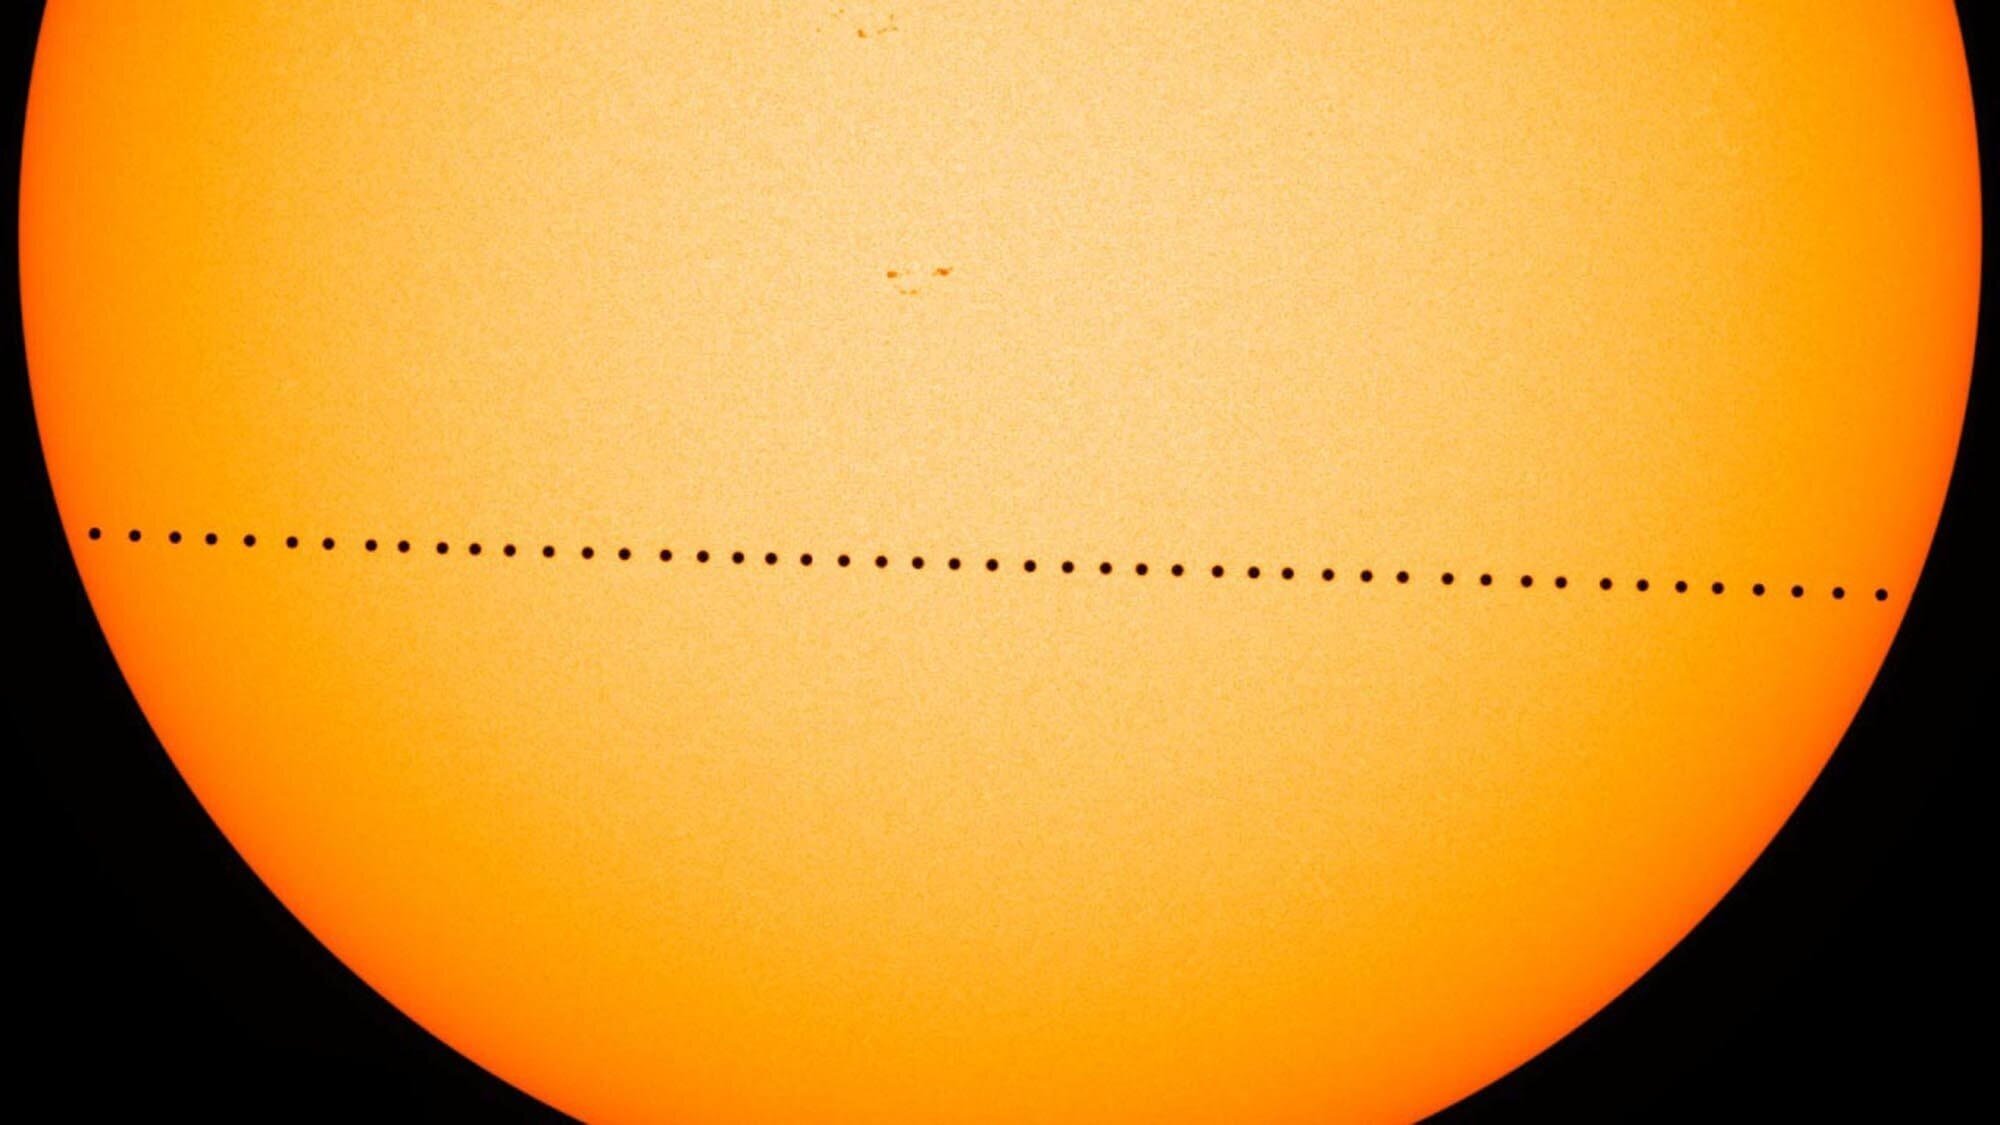 #Відео | Все, що потрібно знати про транзит Меркурія по диску Сонця